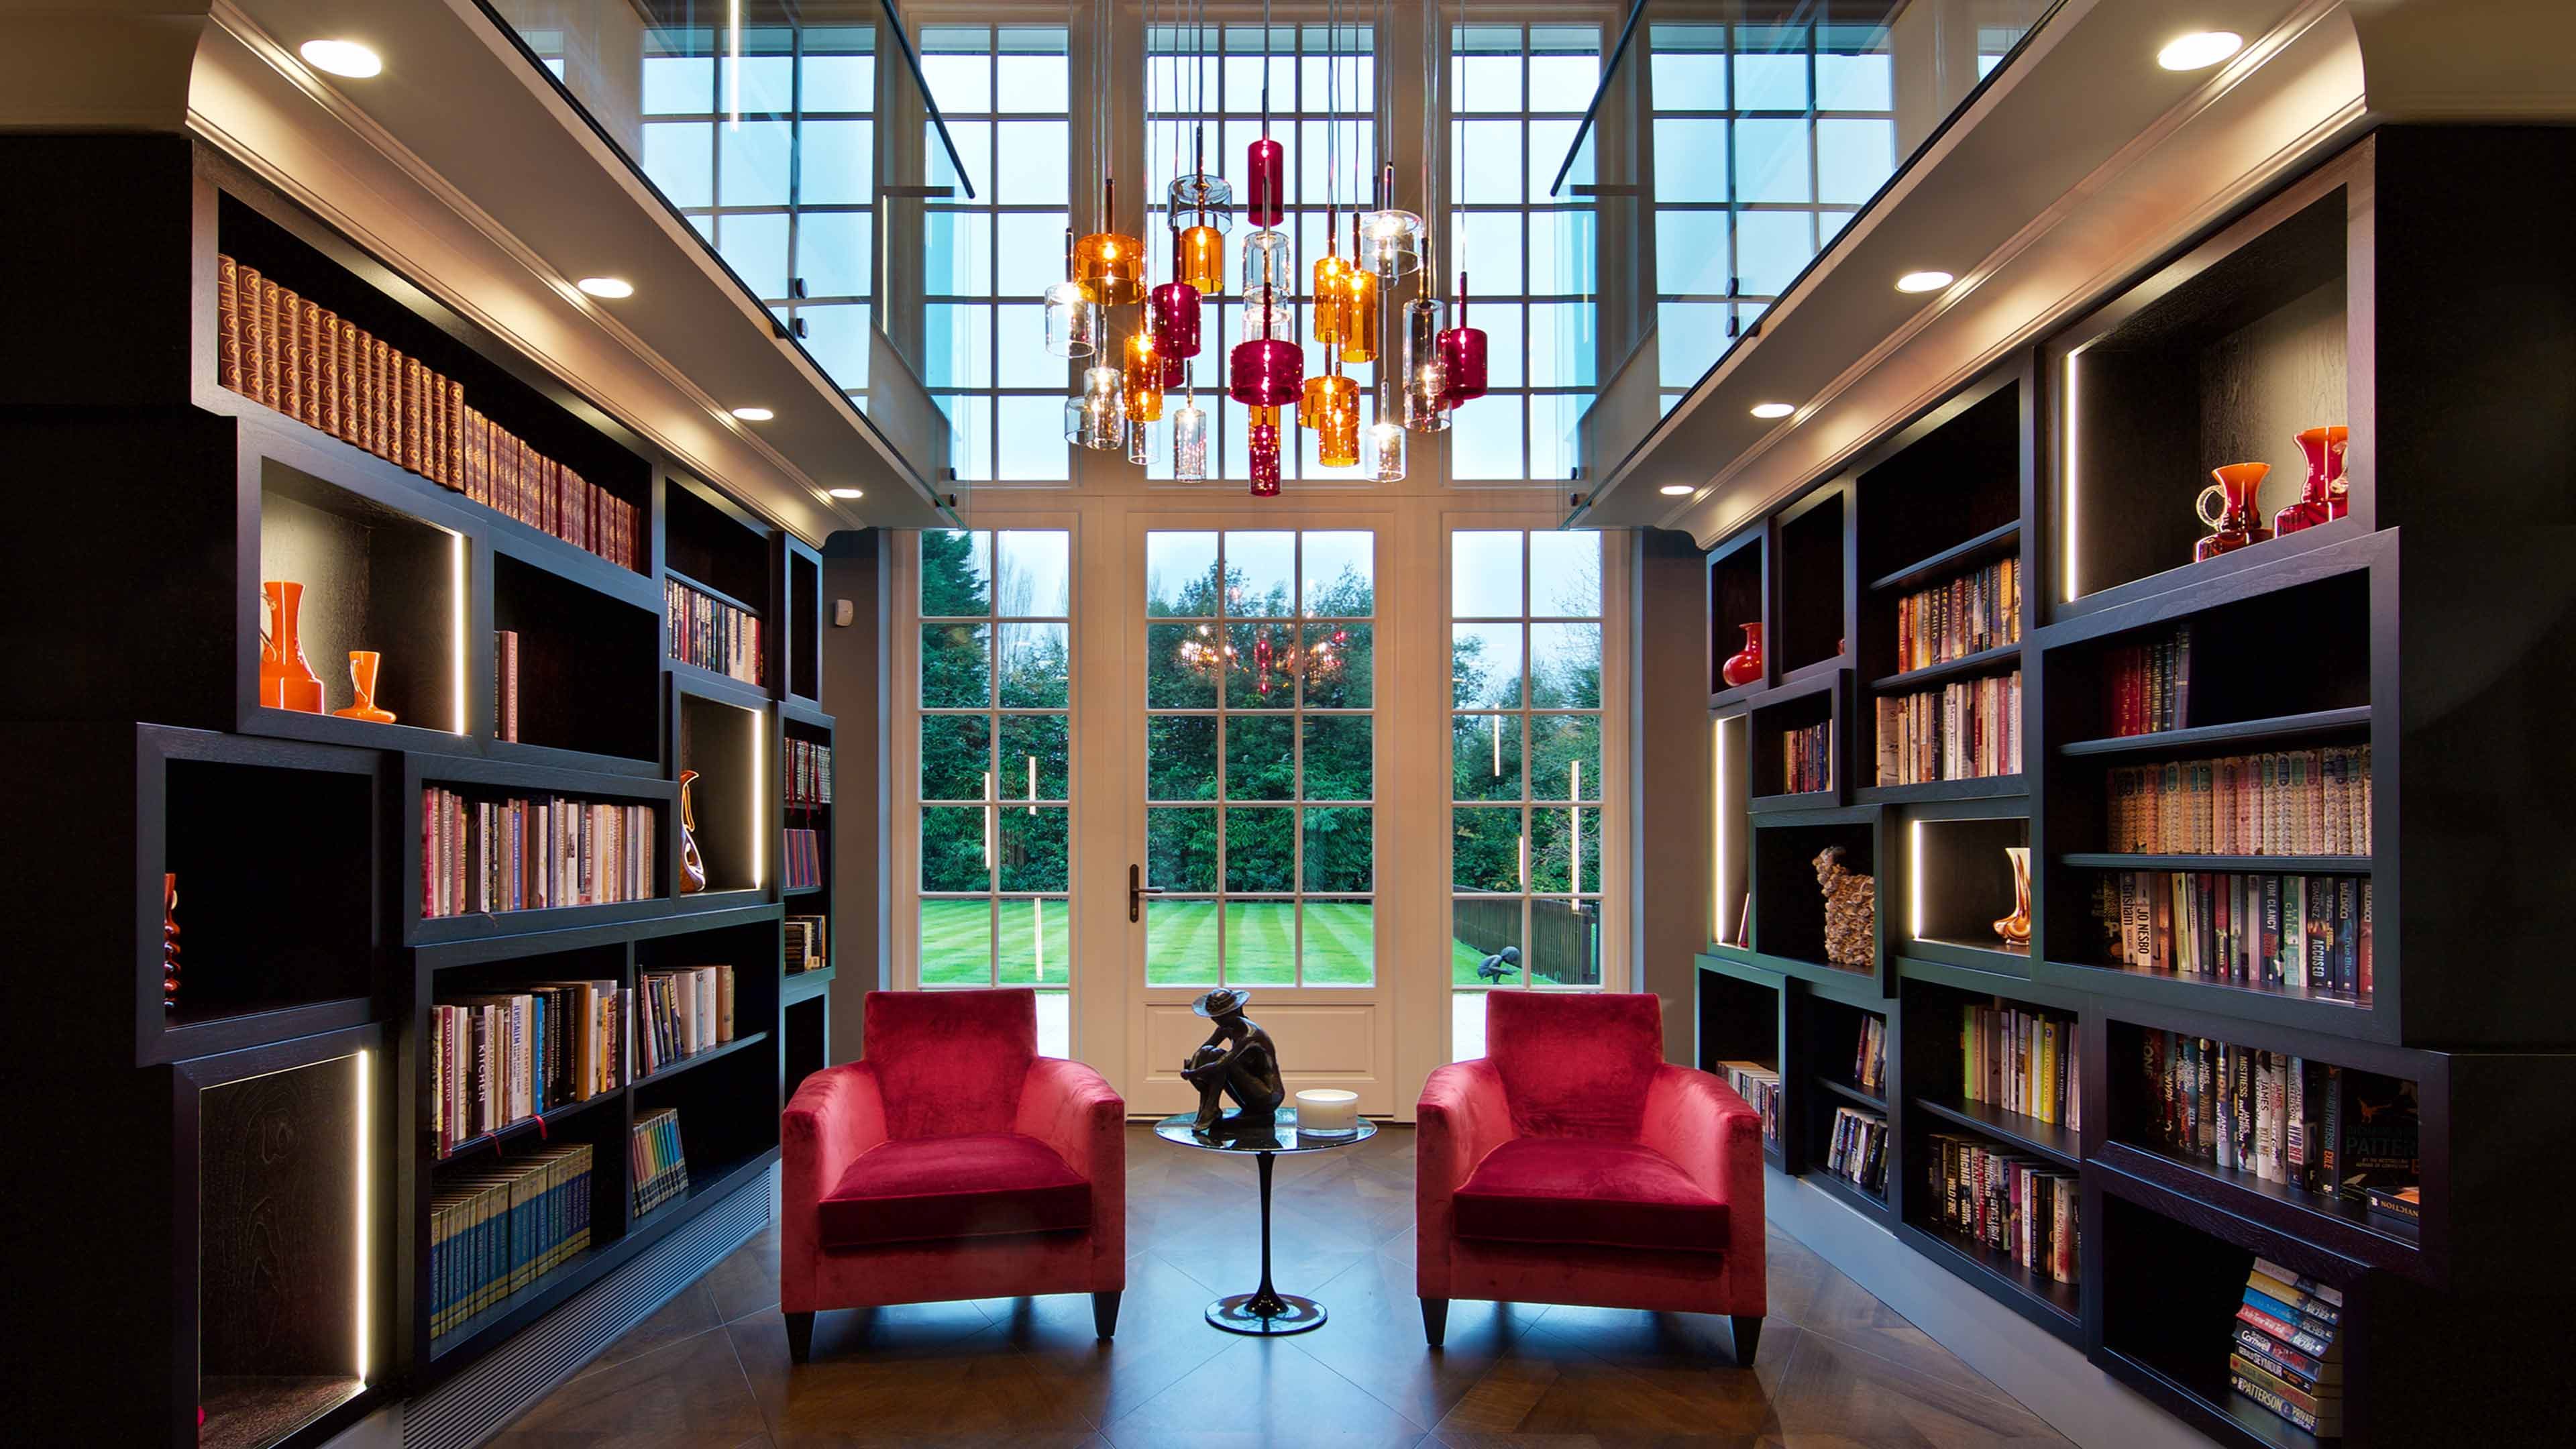 Residential Lighting Design The, Library Bookcase Lighting Design